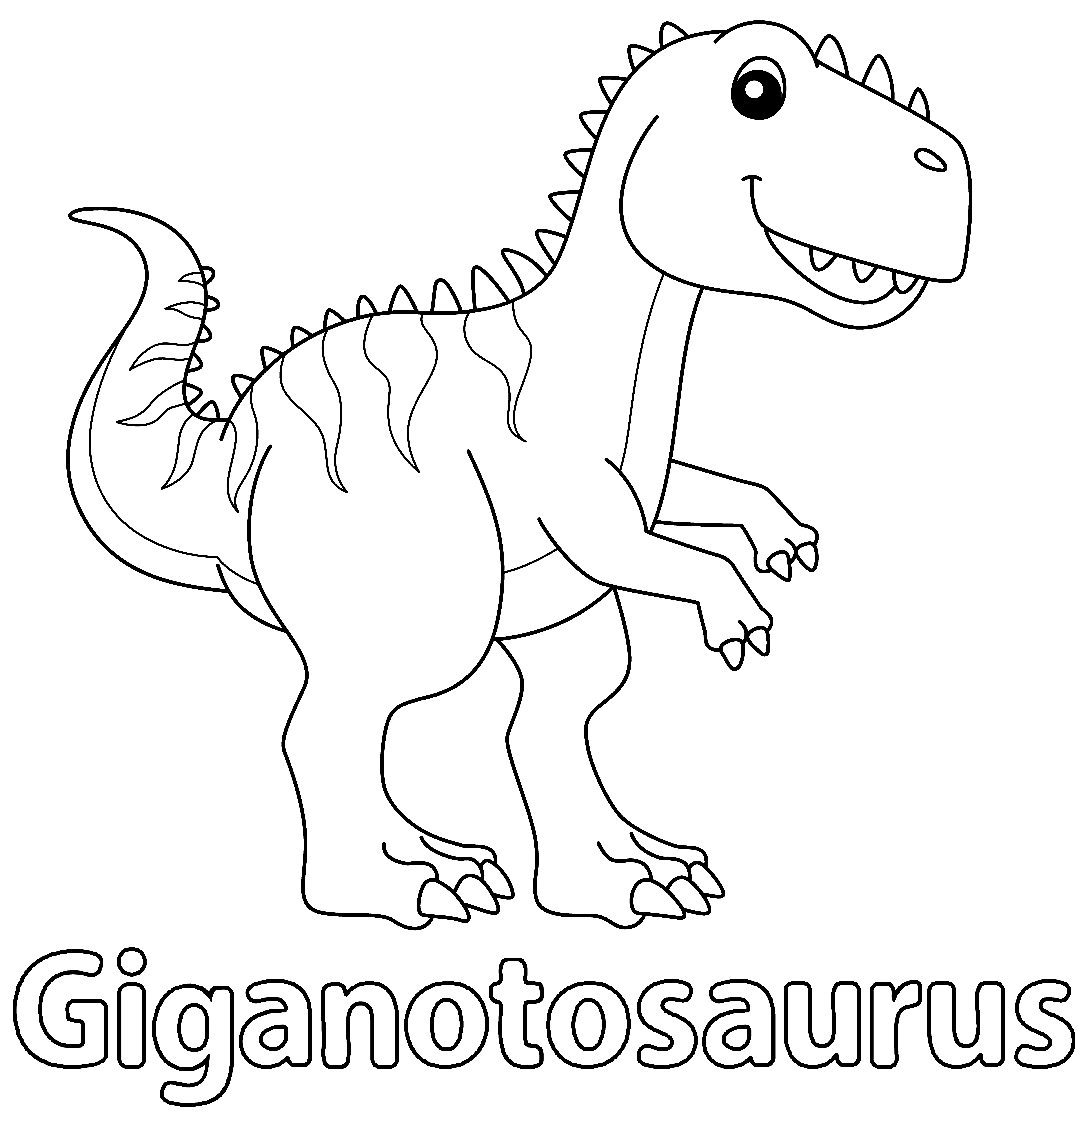 أوراق Giganotosaurus قابلة للطباعة من Giganotosaurus